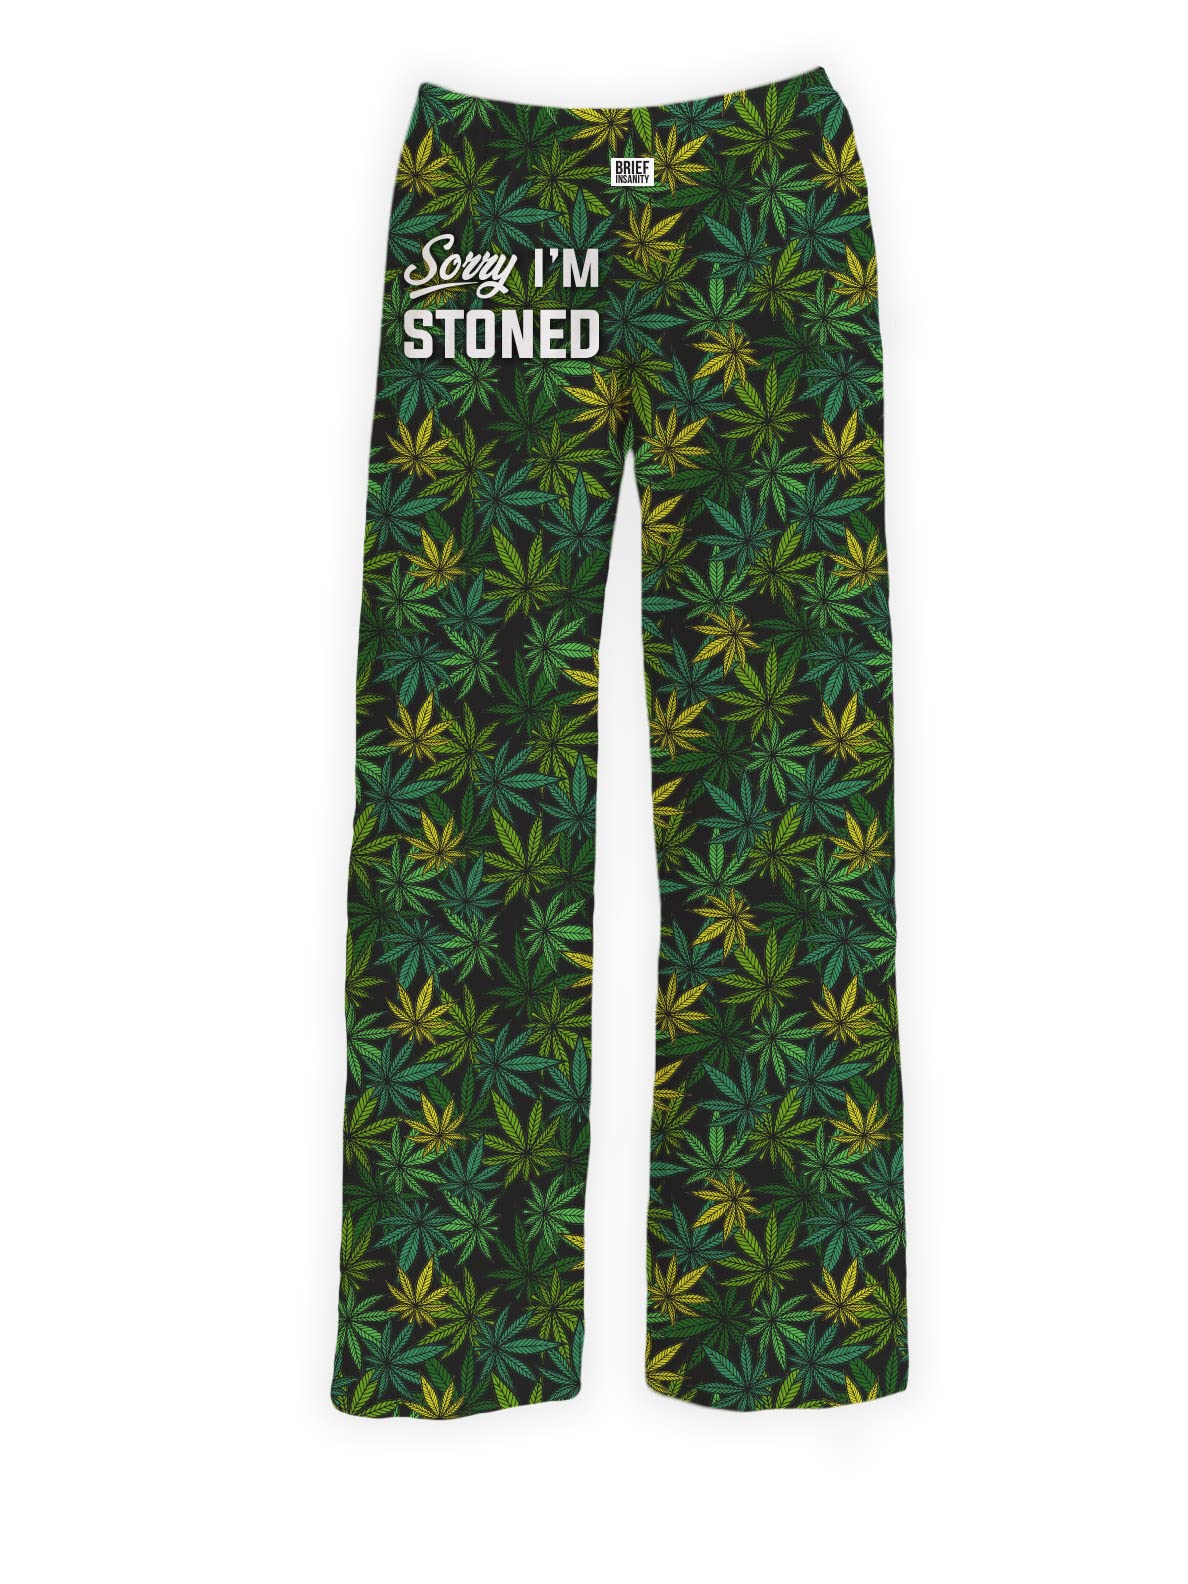 Sorry I'm Stoned Marijuana Pajama Pants, BRIEF INSANITY